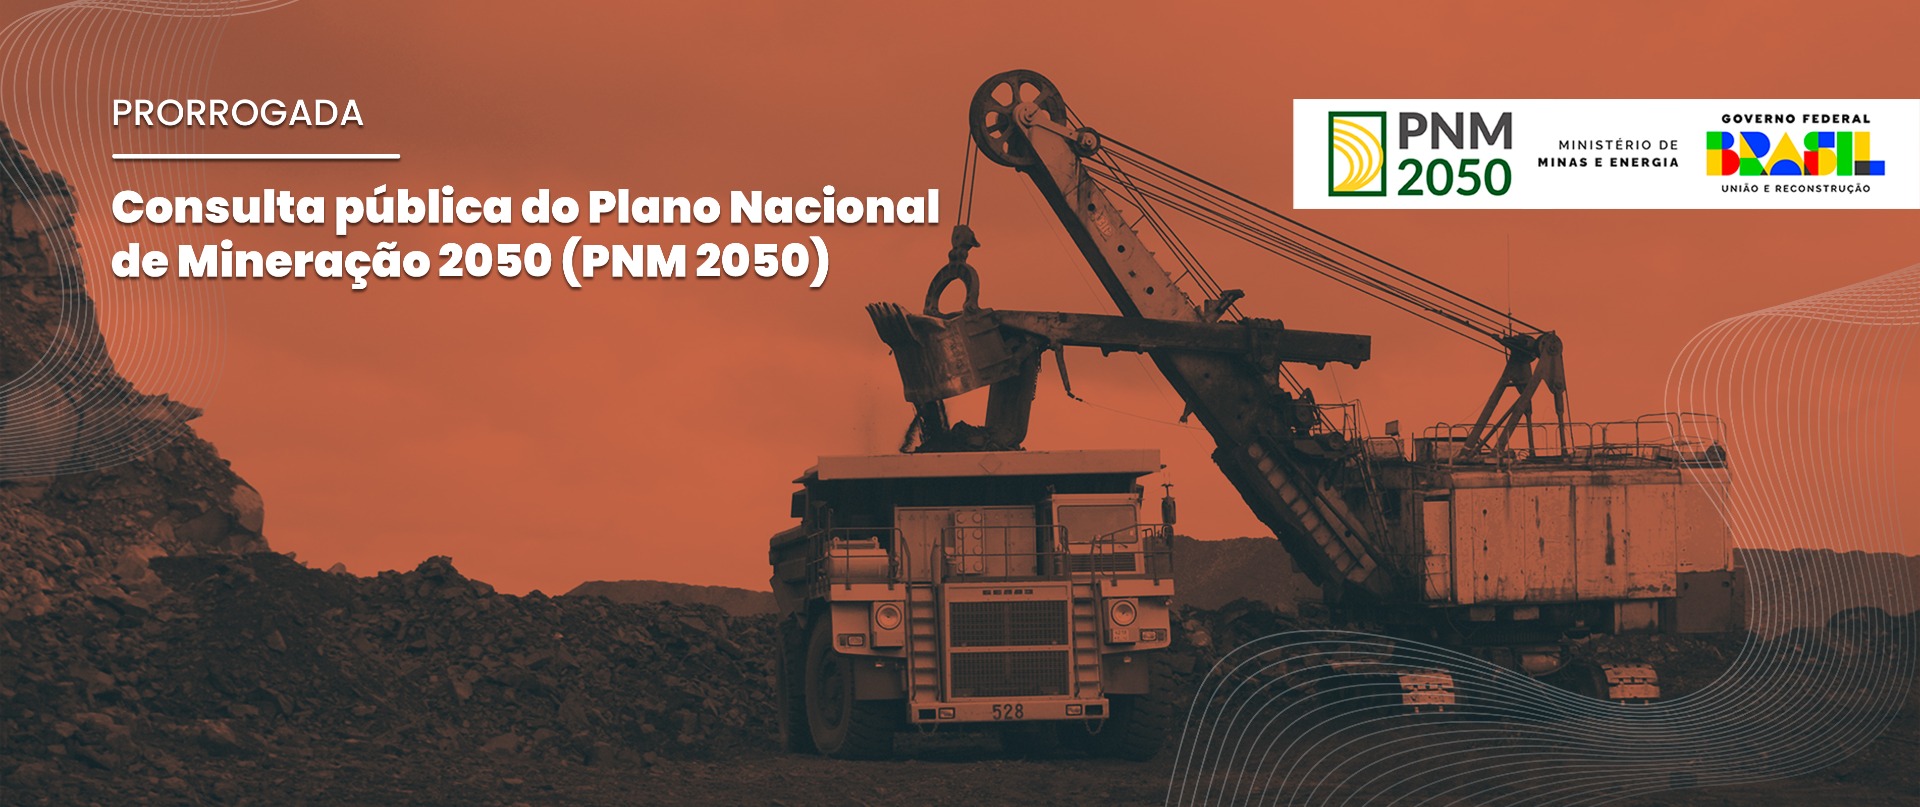 Com o novo prazo, sociedade, especialistas, agentes públicos e privados do setor podem enviar suas contribuições para o PNM 2050 até 18 de fevereiro.